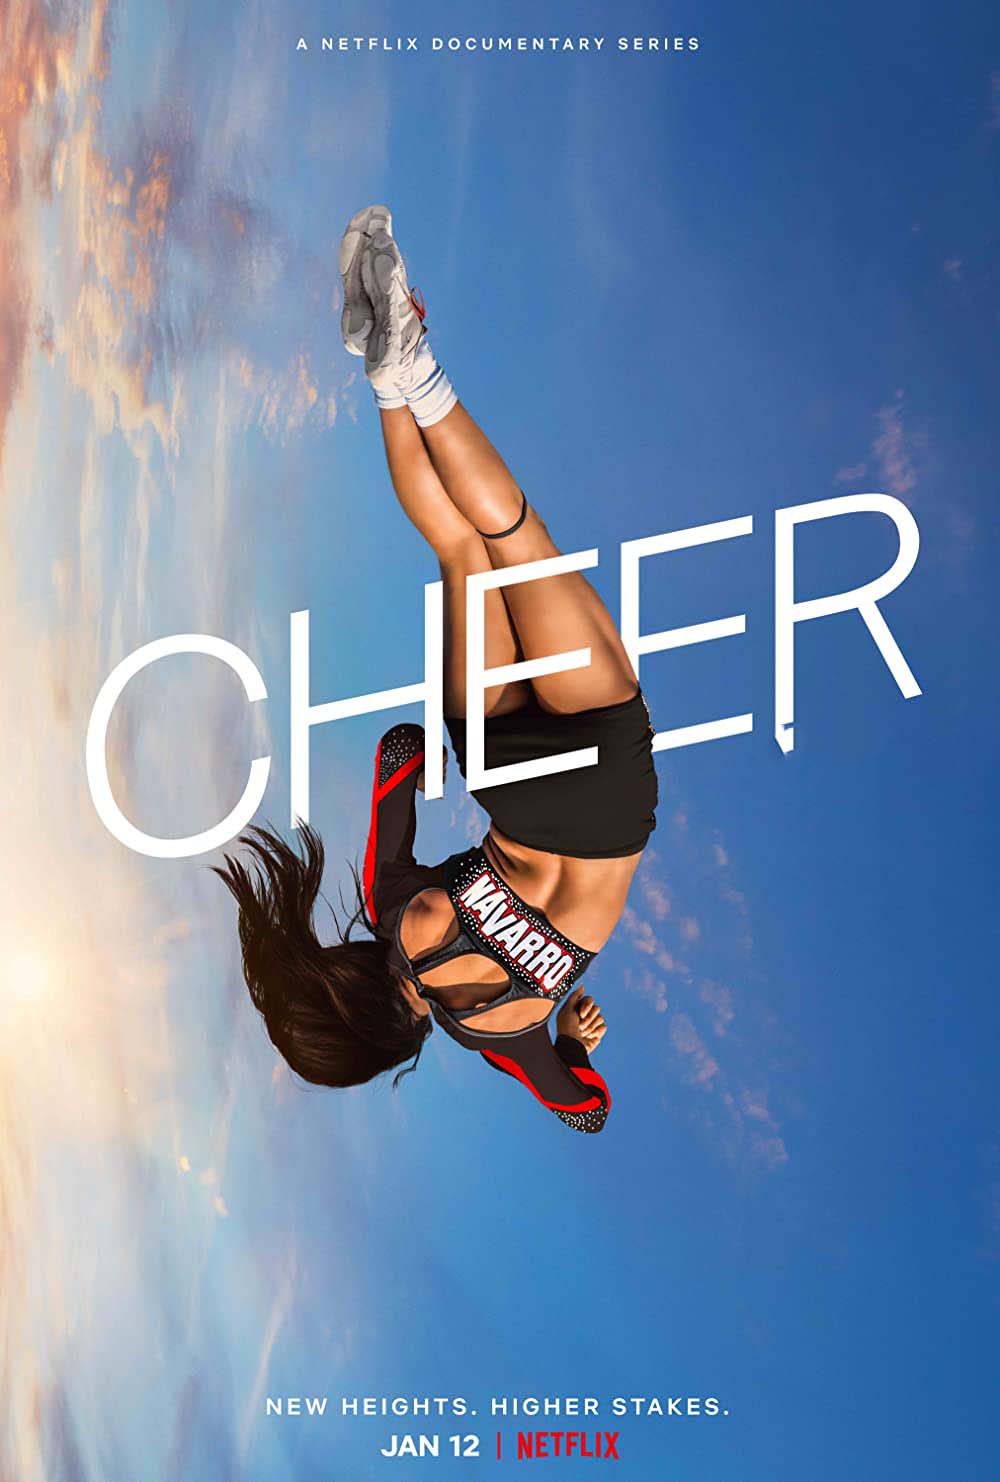 cheer season 3 announcement